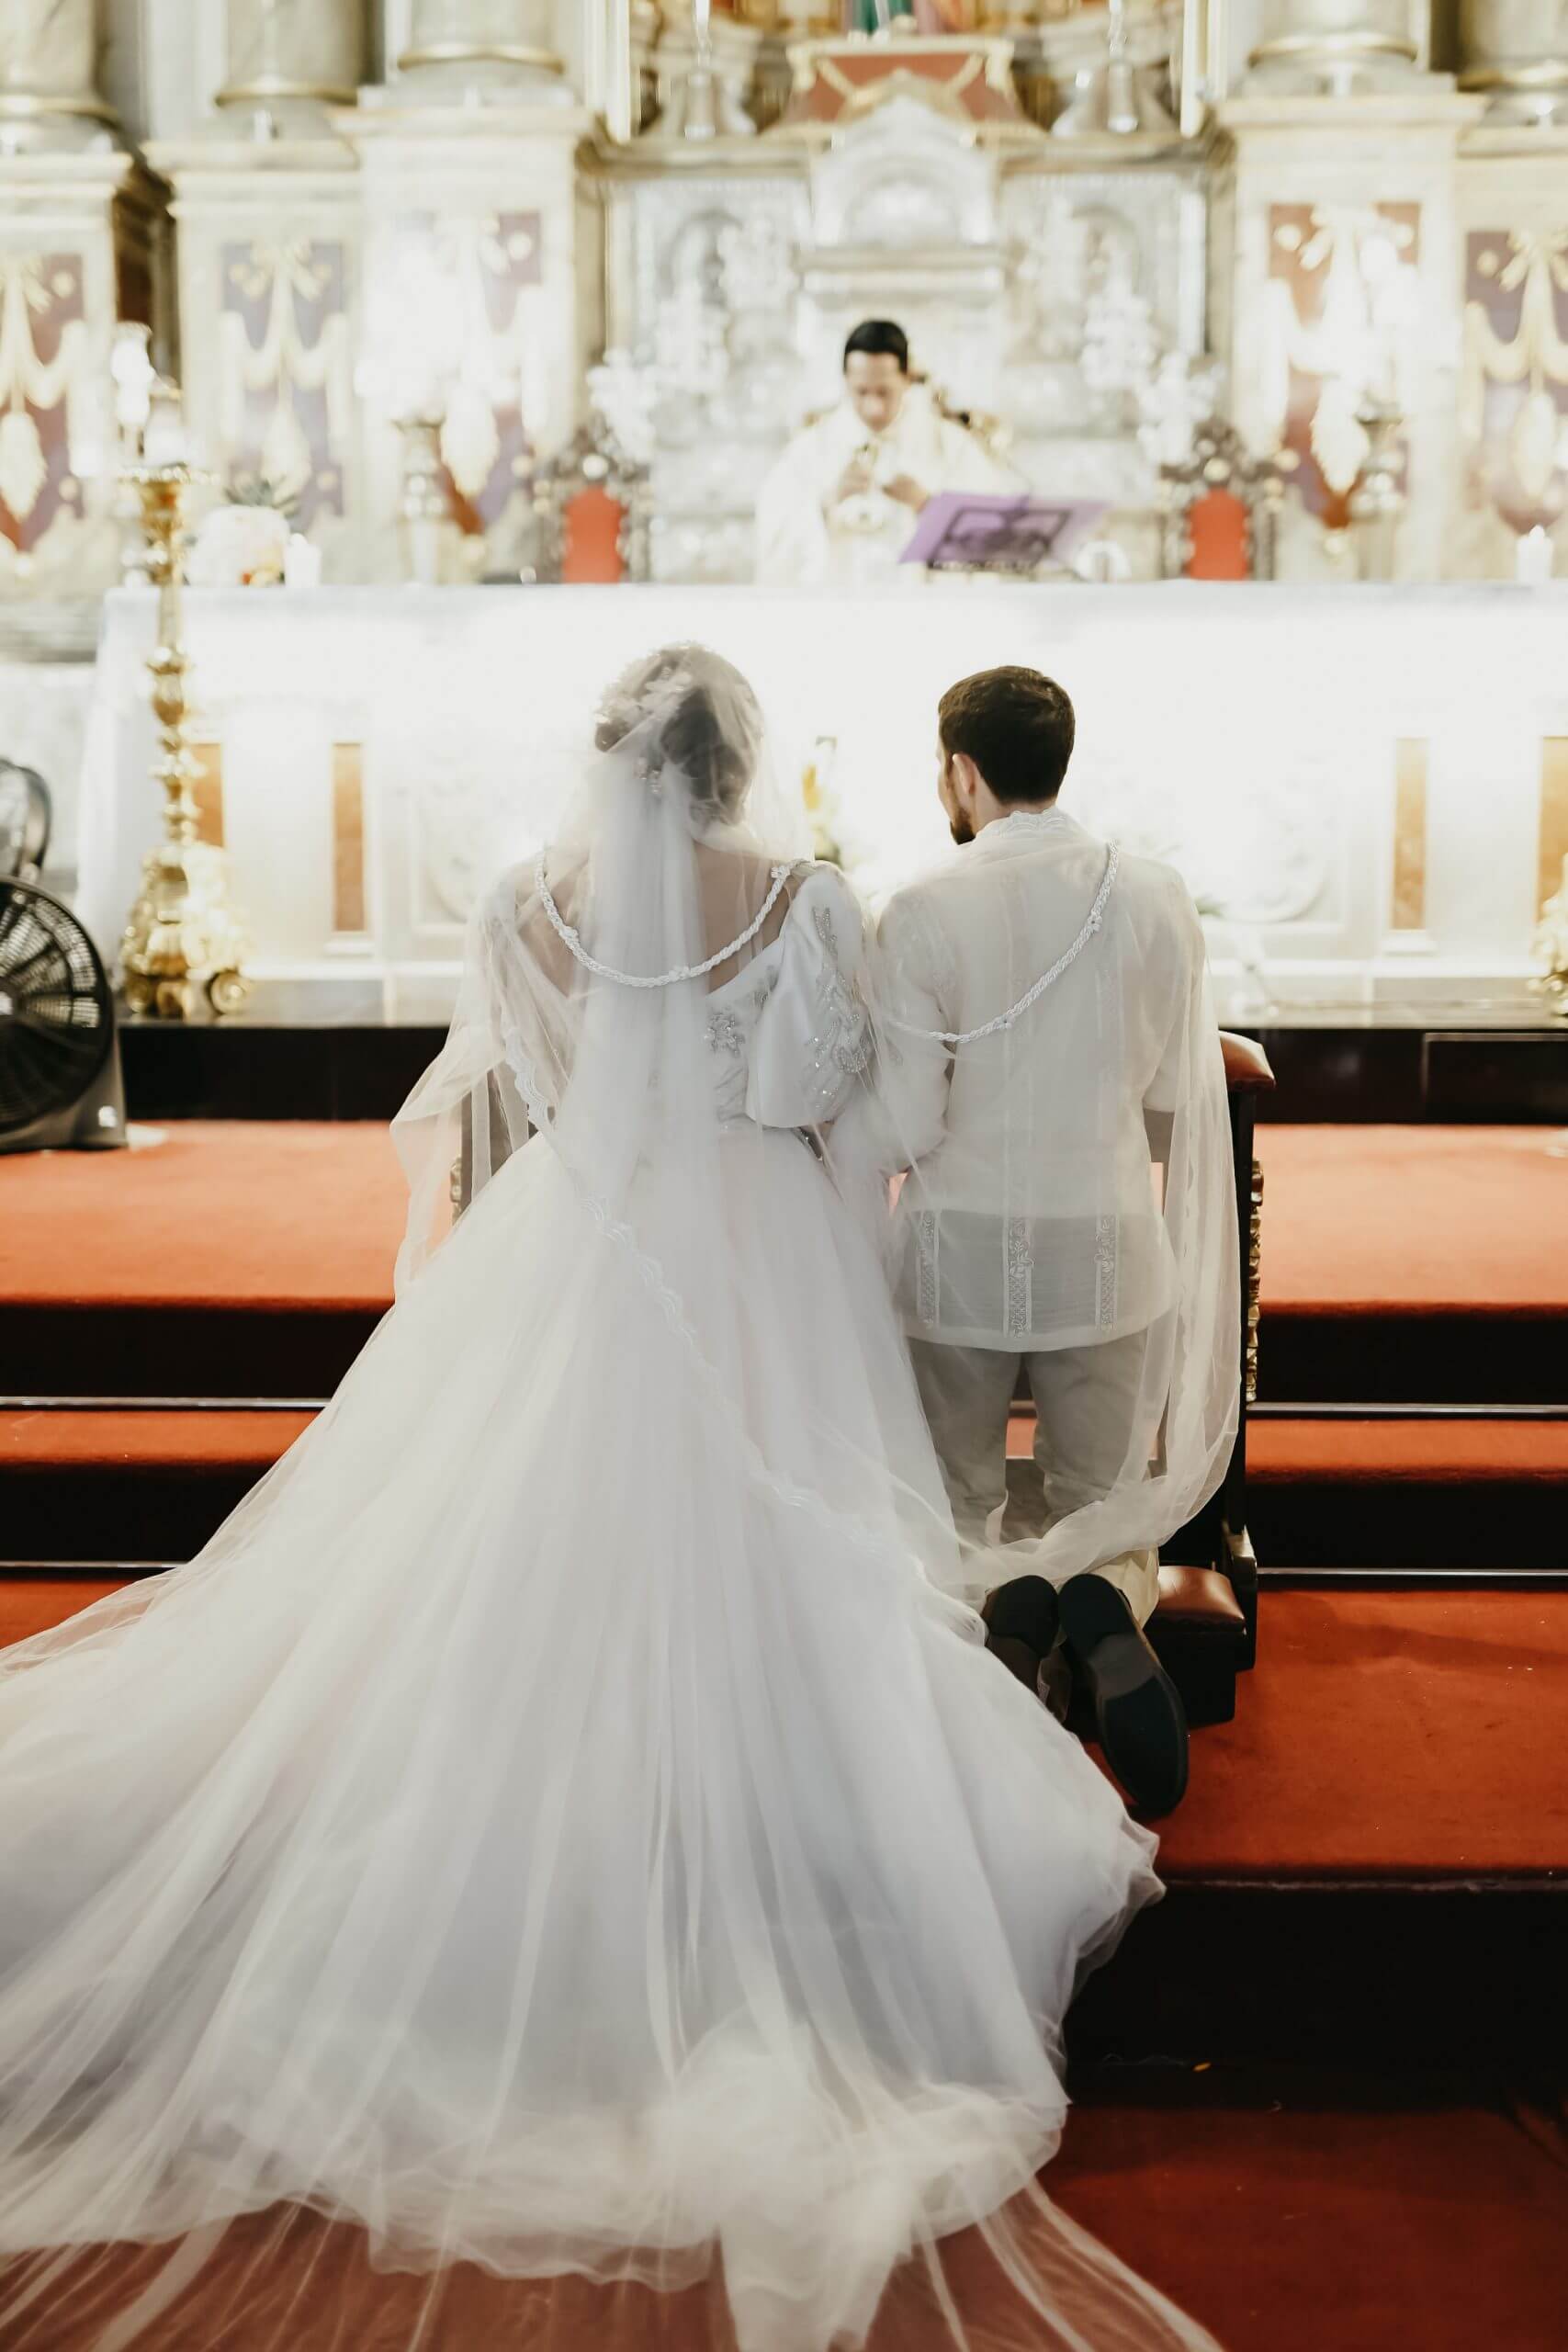 Resplendent Best Describes Their Wedding - CatholicMatch